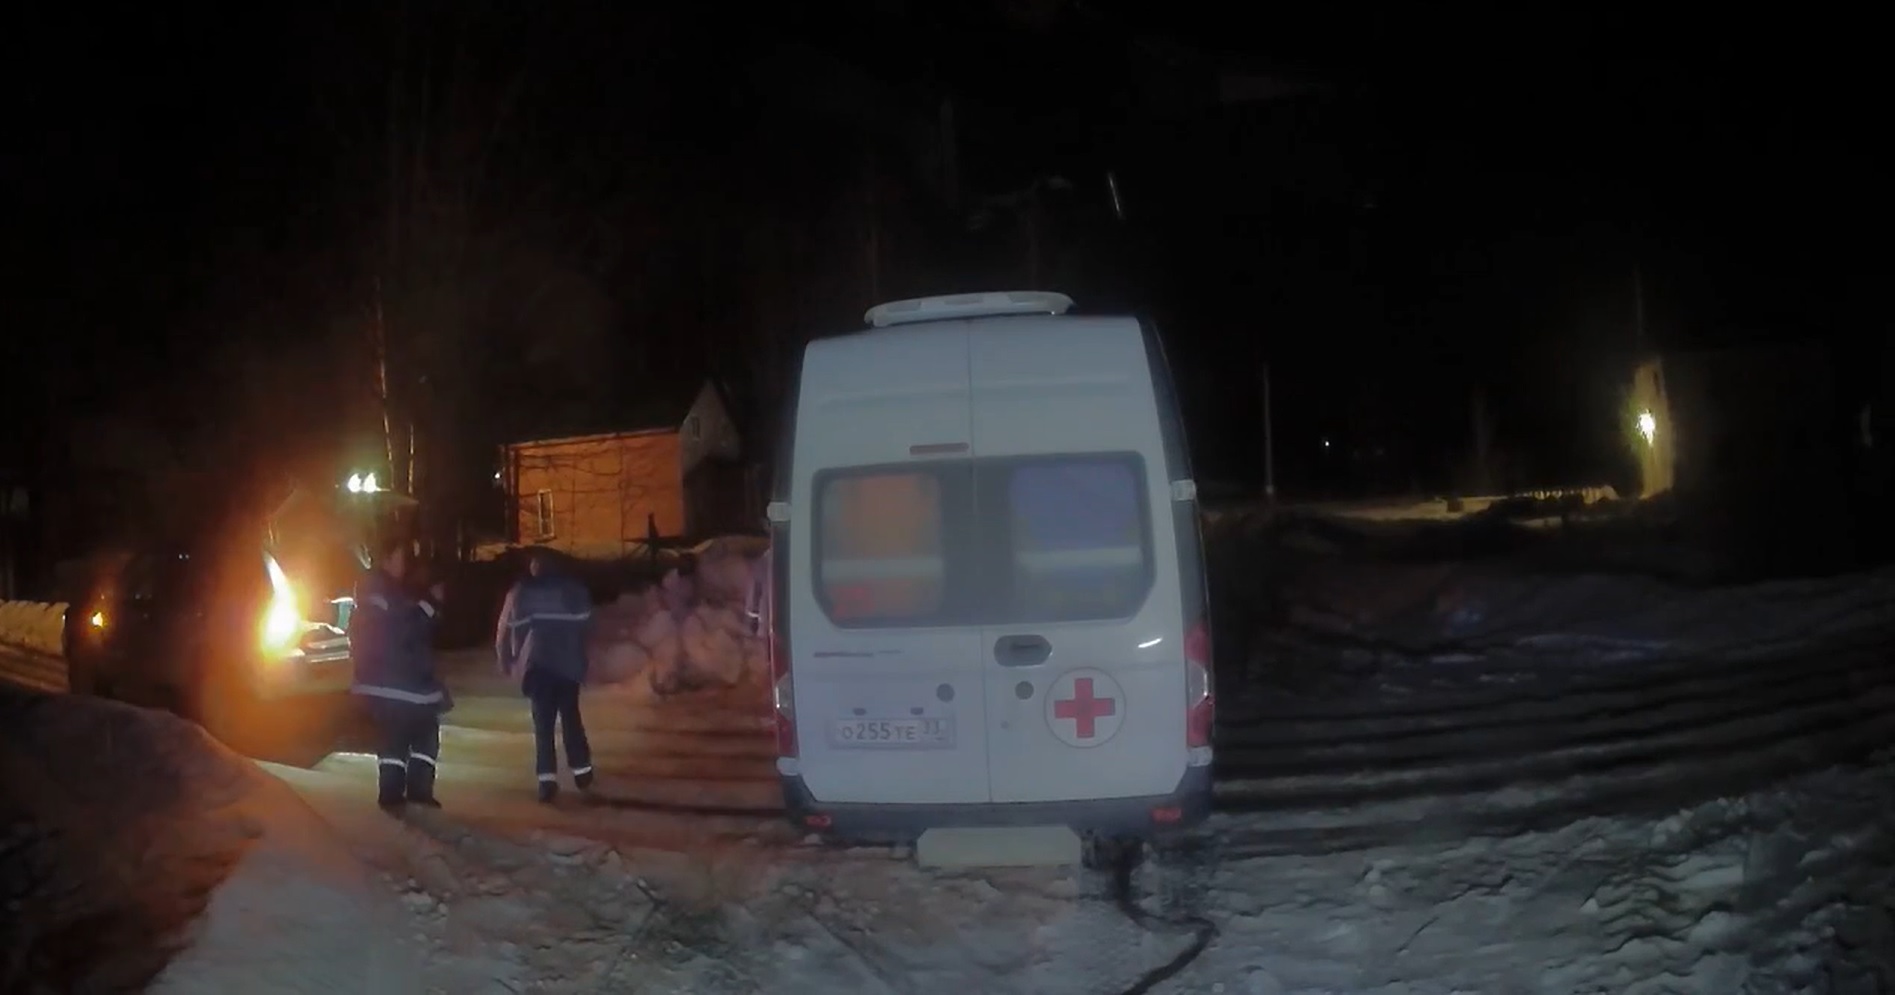 Во Владимире машина скорой помощи застряла на бездорожье